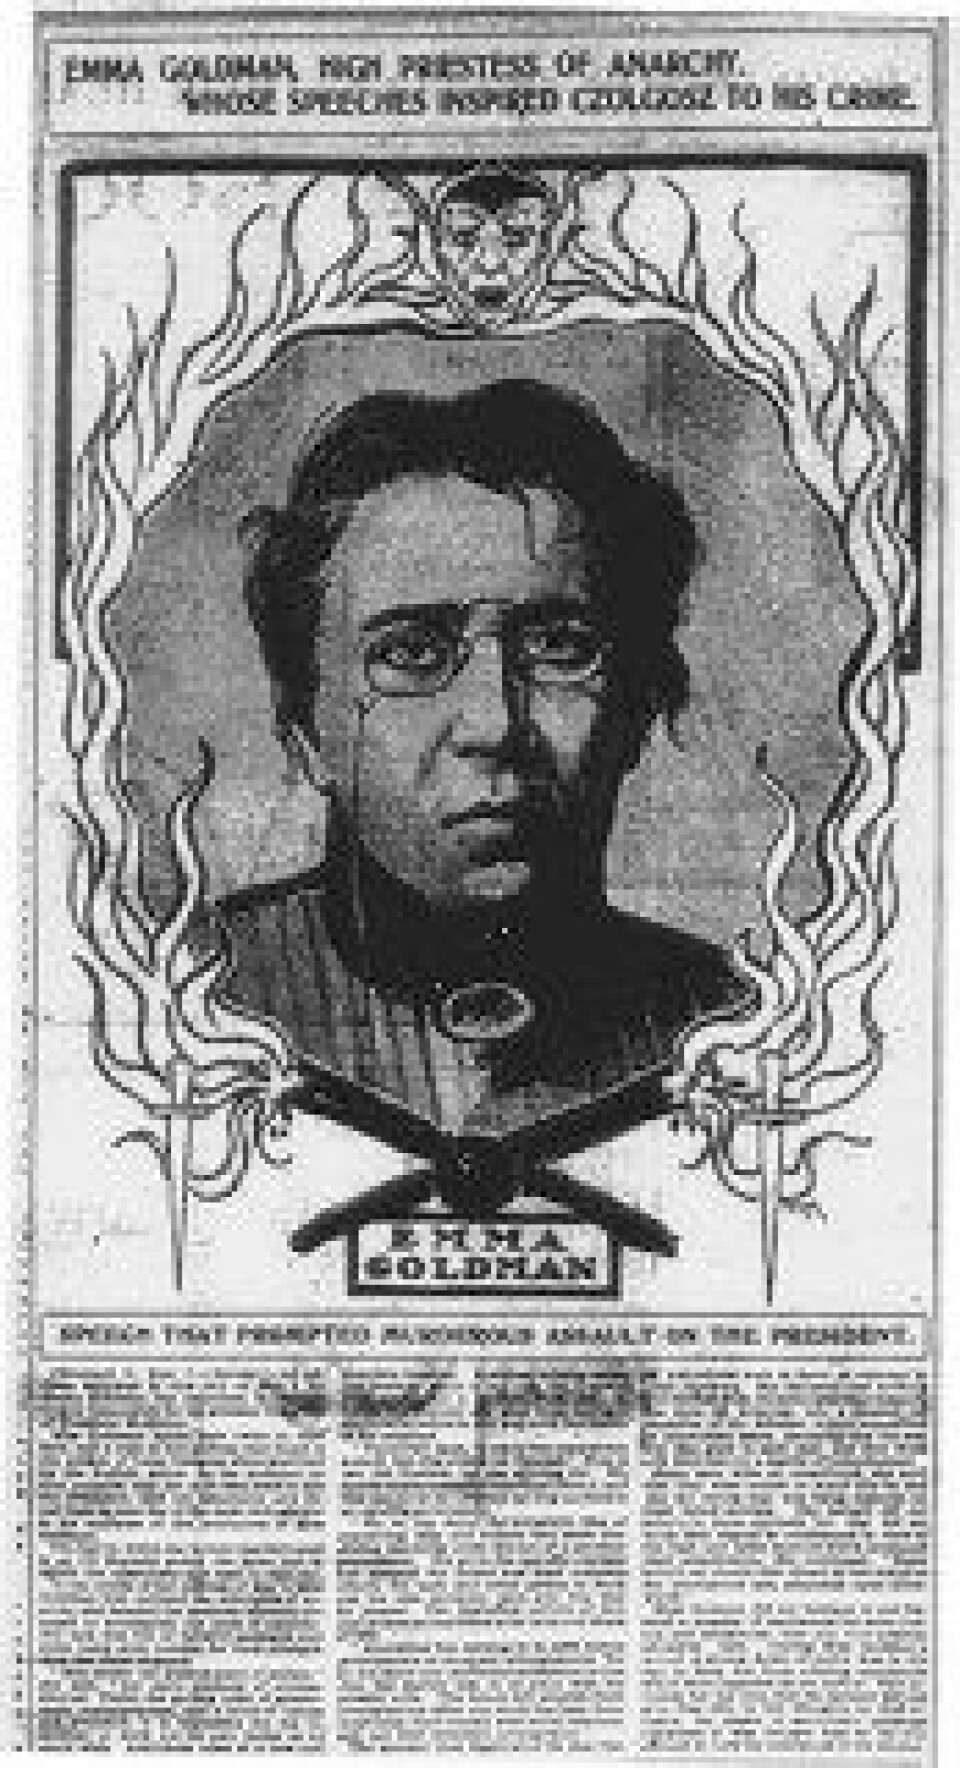 Illustrasjon av Emma Goldman publisert i Chicago Daily Tribune, 1901. (Kilde: Wikimedia Commons)